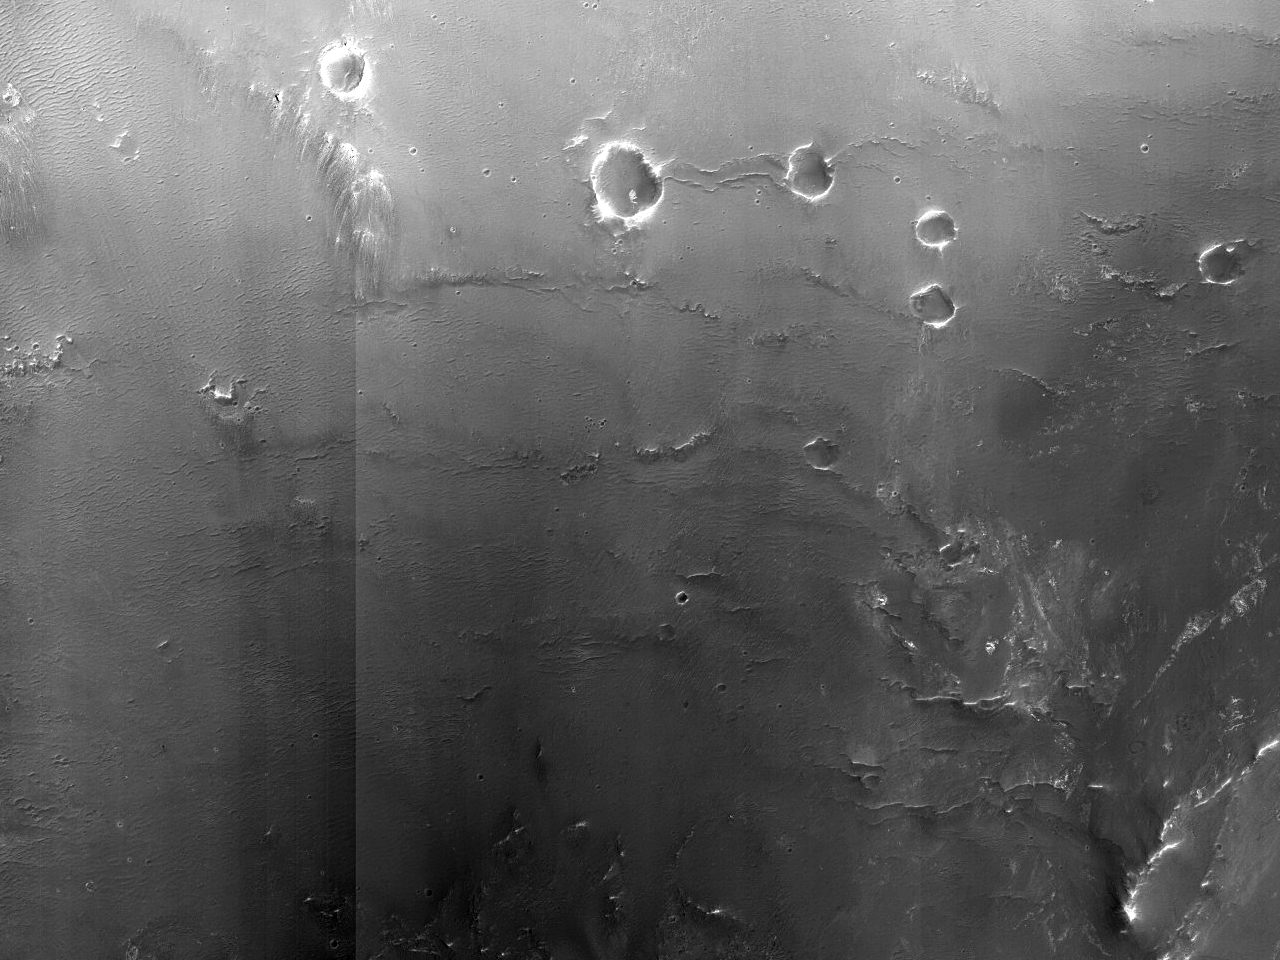 Terreno escuro em uma cratera próxima à região de Mawrth Vallis